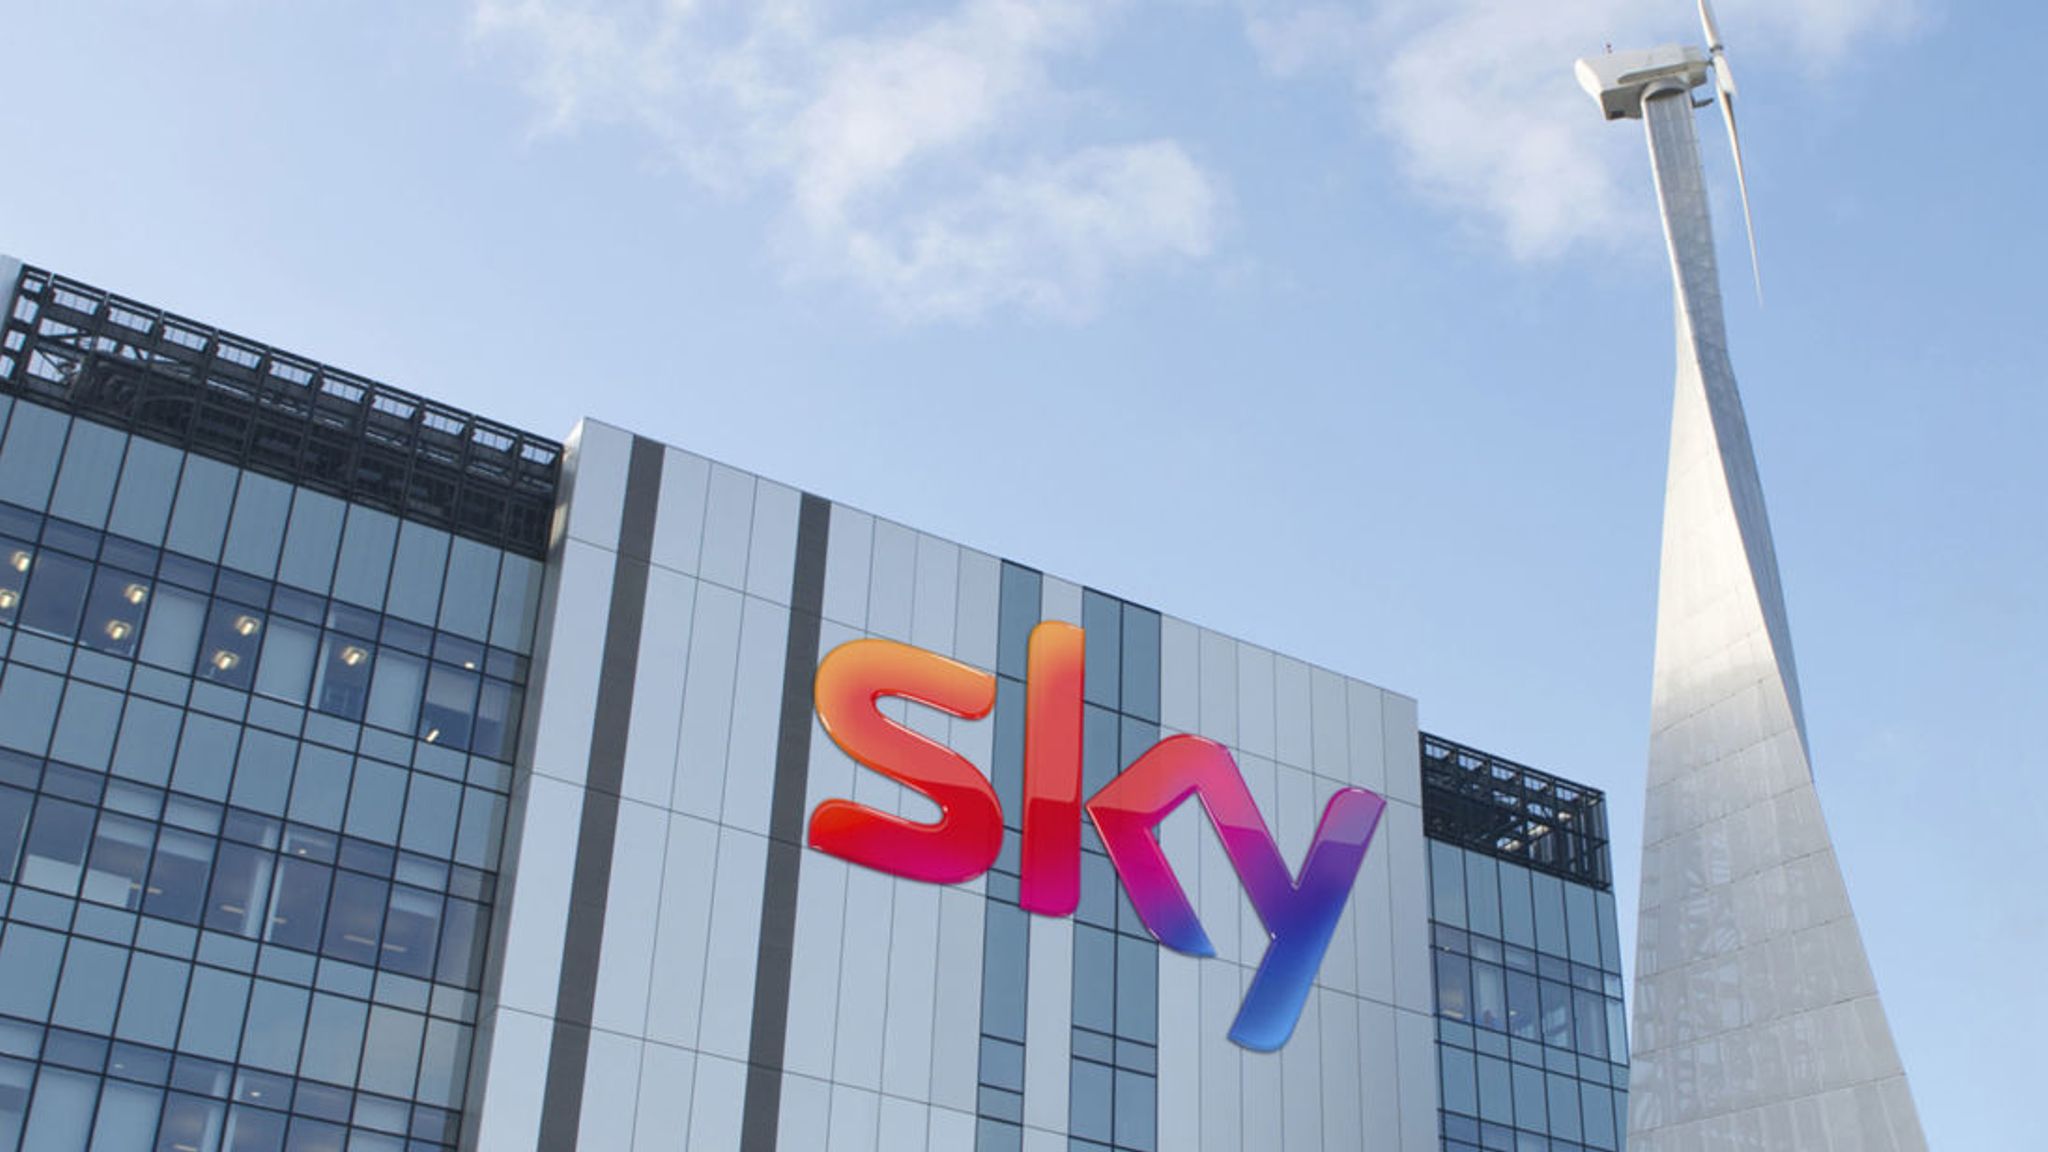 Comcast supera Fox nell'asta per Sky, valutando la società di media a £ 29,7 miliardi | Notizie economiche | Notizie dal cielo